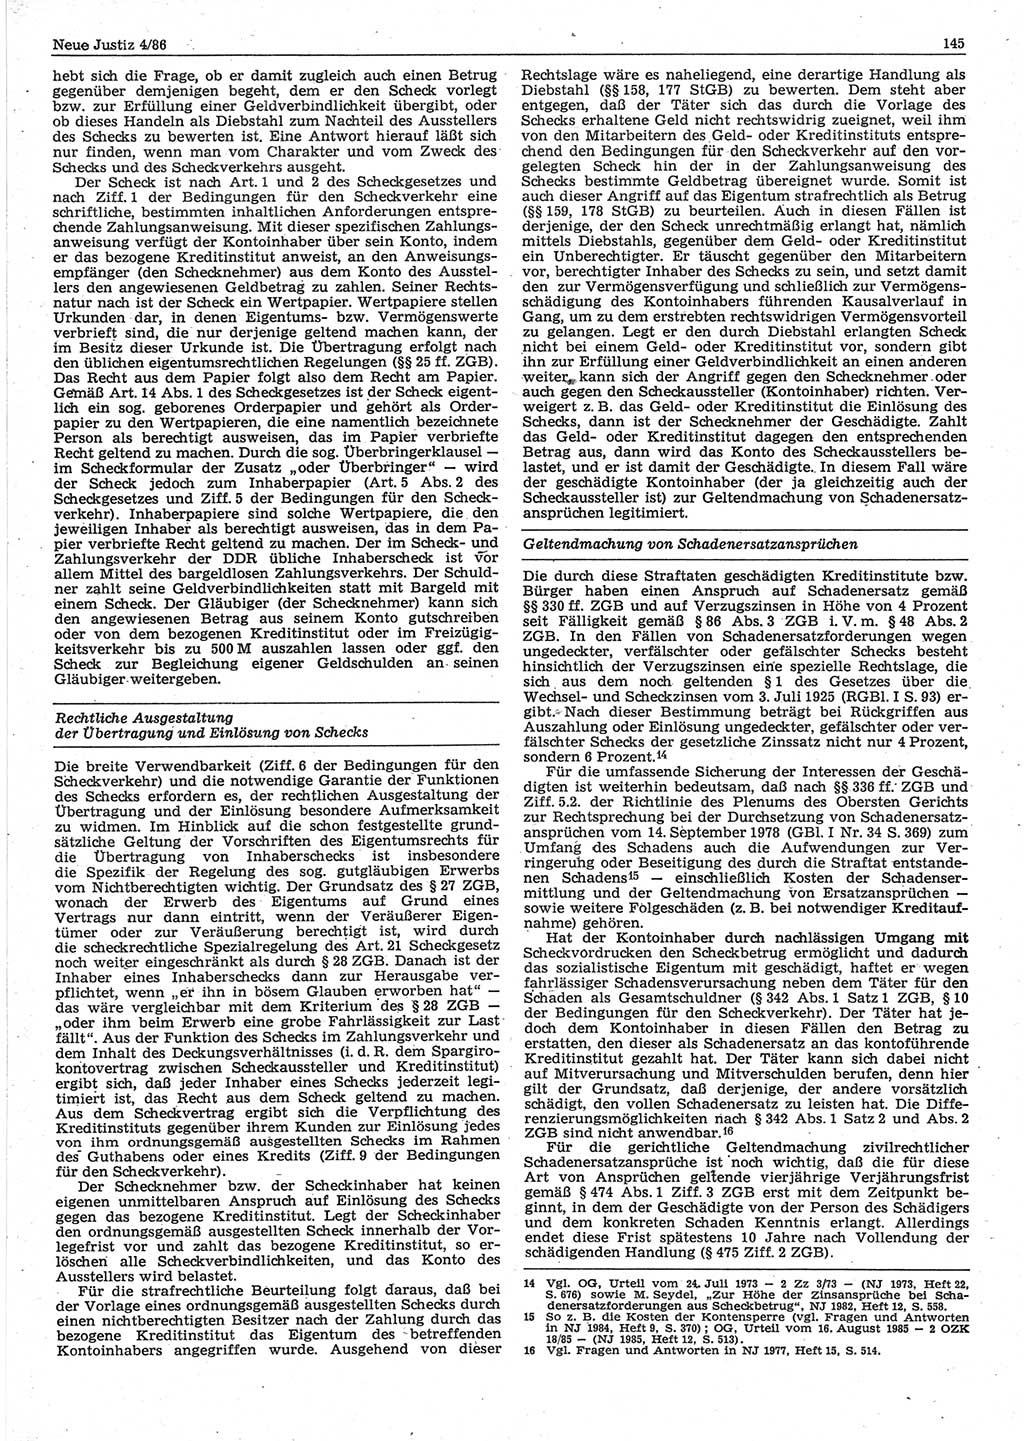 Neue Justiz (NJ), Zeitschrift für sozialistisches Recht und Gesetzlichkeit [Deutsche Demokratische Republik (DDR)], 40. Jahrgang 1986, Seite 145 (NJ DDR 1986, S. 145)